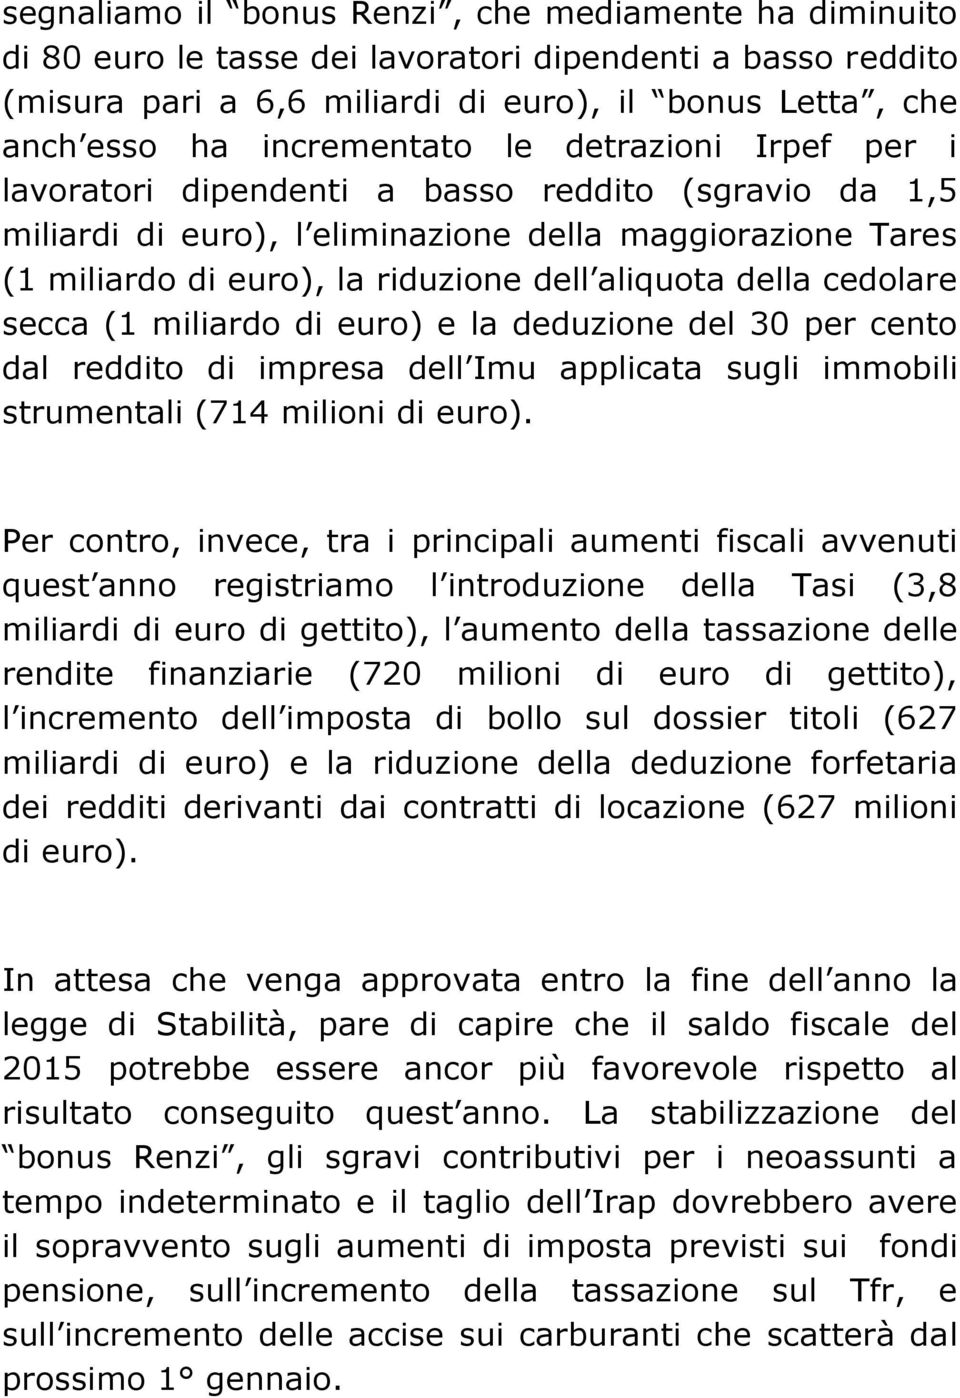 aliquota della cedolare secca (1 miliardo di euro) e la deduzione del 30 per cento dal reddito di impresa dell Imu applicata sugli immobili strumentali (714 milioni di euro).